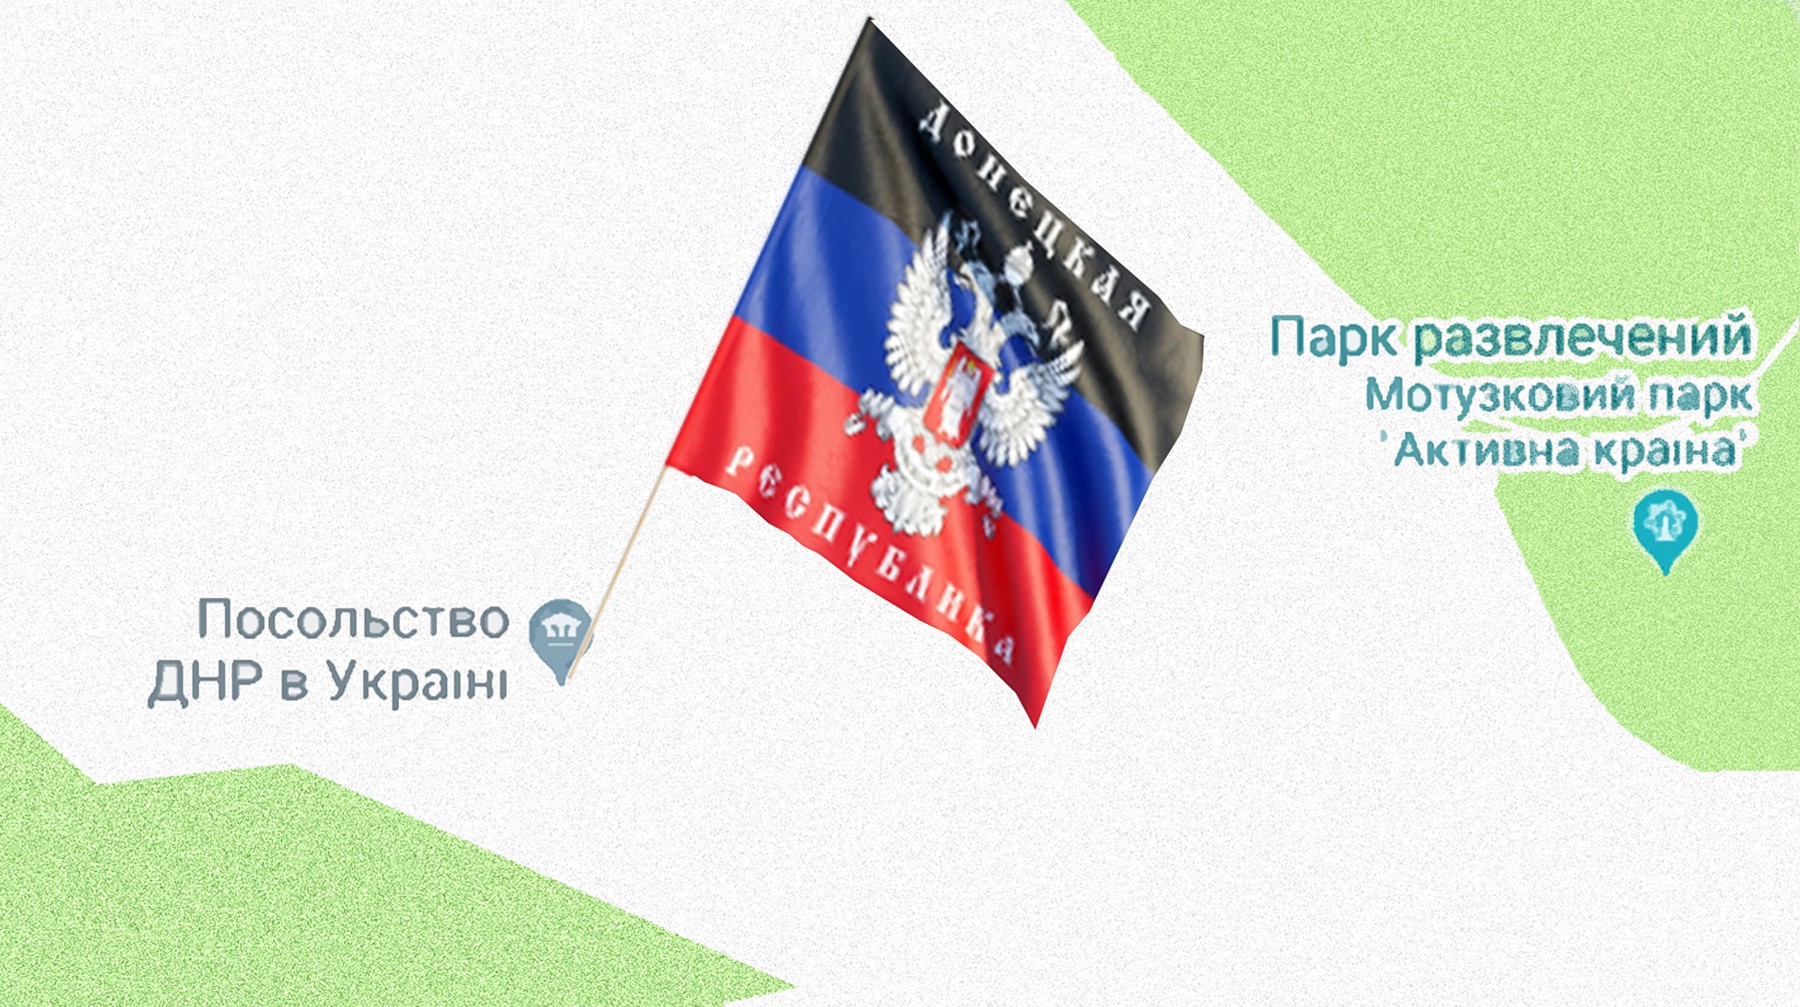 Dailystorm - На картах Google в Киеве нашли посольство ДНР